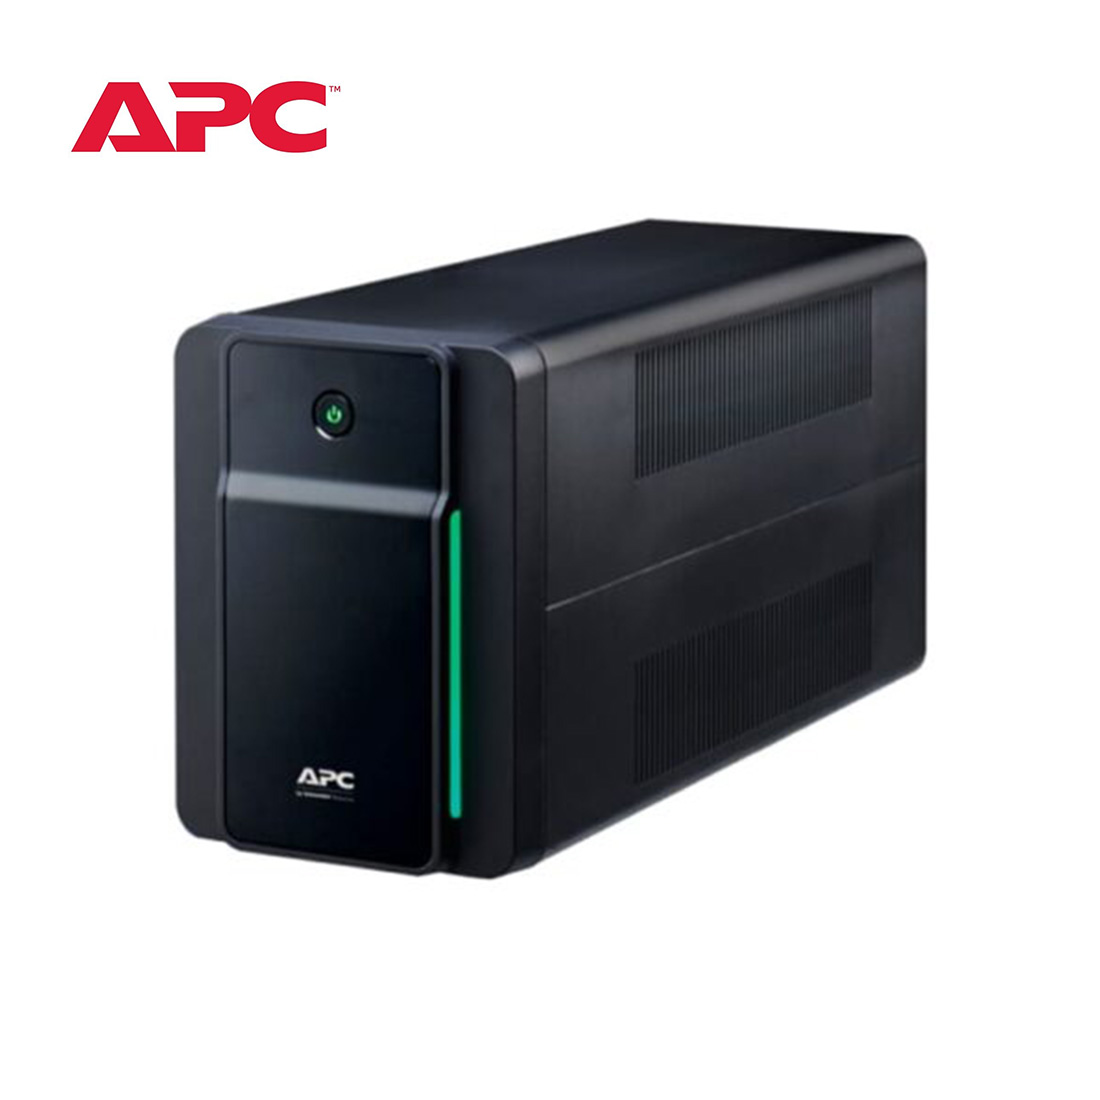 APC-Back-UPS-2200VA-230V-AVR-Universal-Sockets